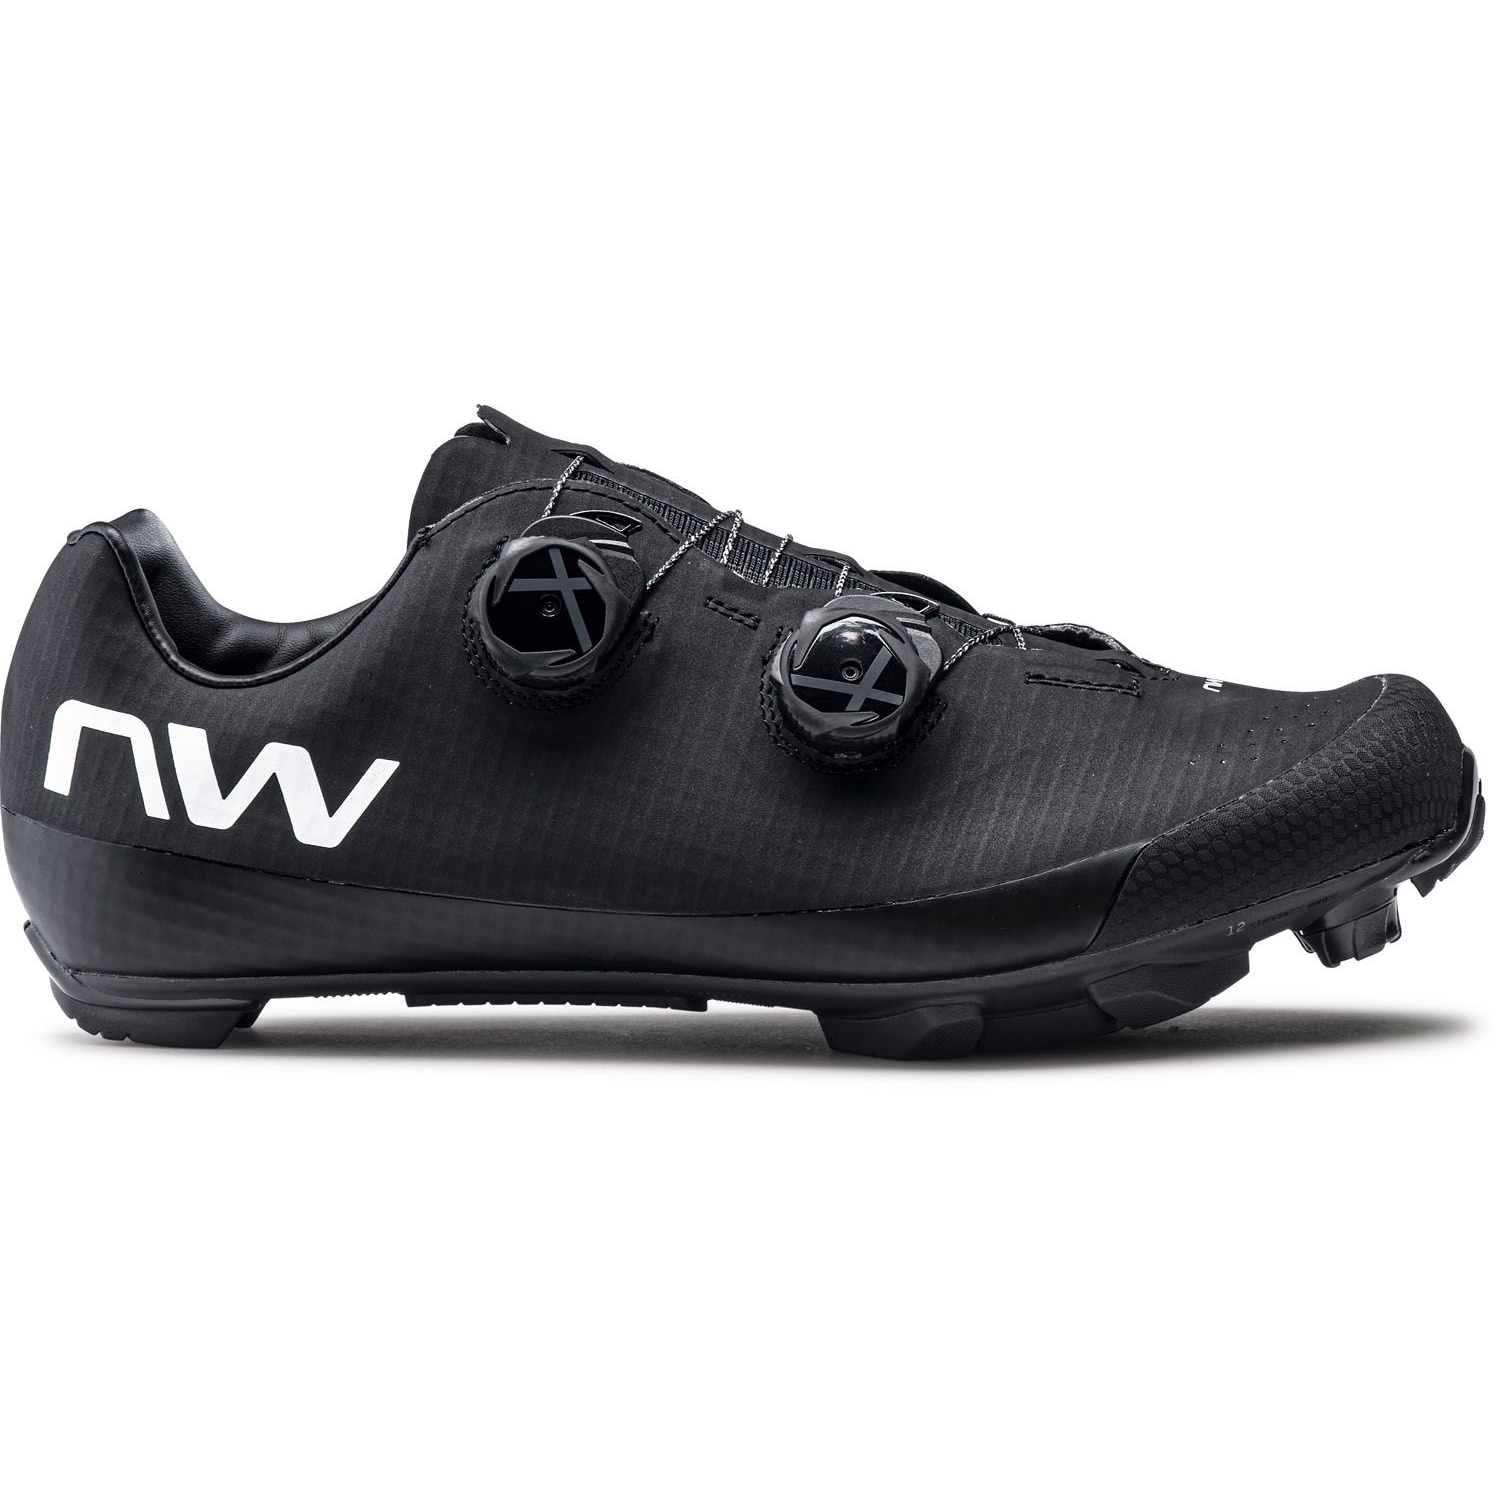 Produktbild von Northwave Extreme XCM 4 MTB Schuhe - schwarz 10